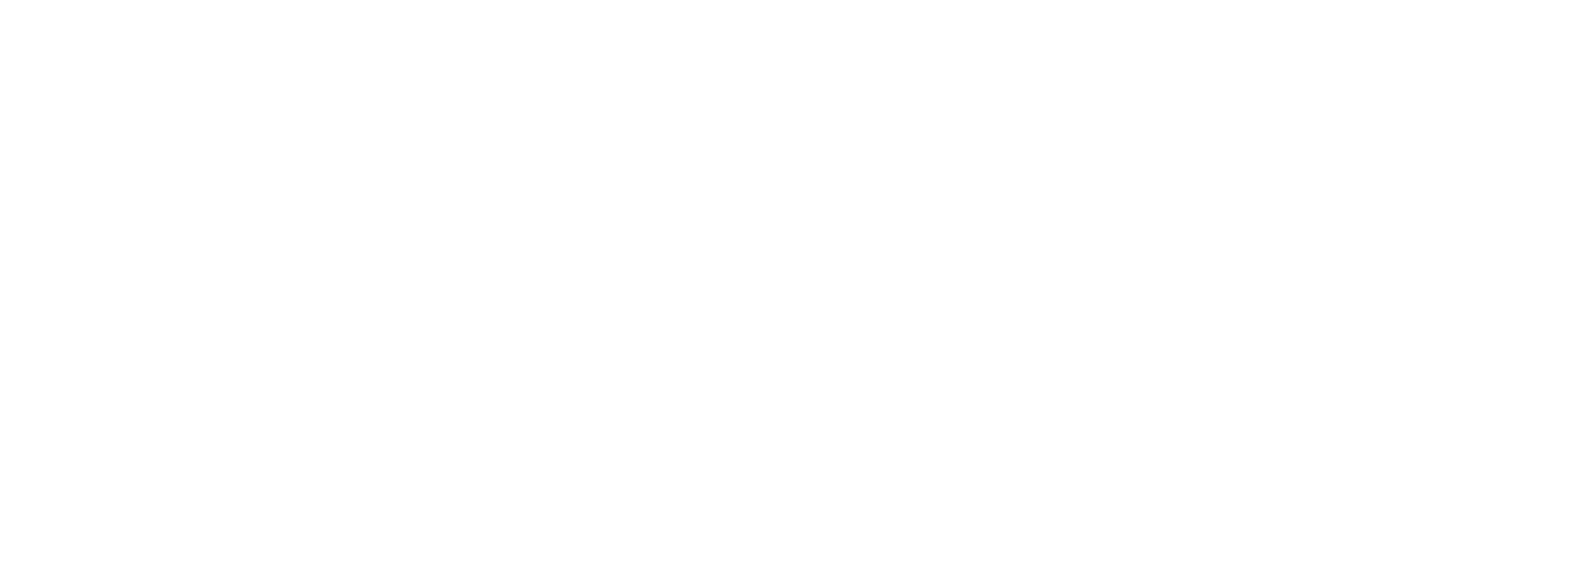 D'Ieteren Group logo large for dark backgrounds (transparent PNG)